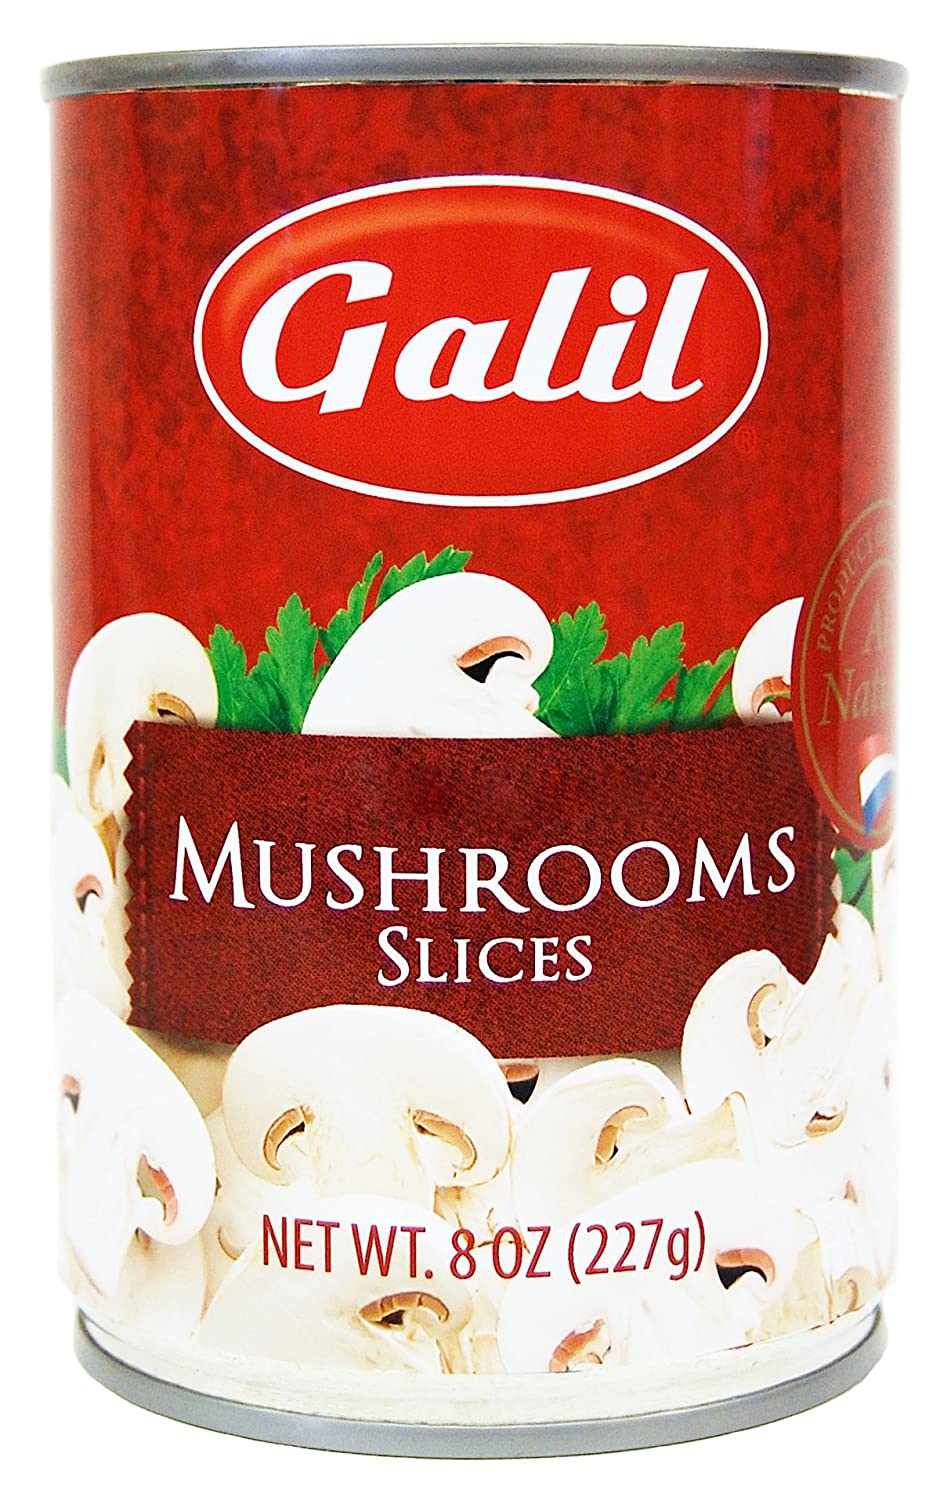 Galil Mushrooms Slices 8 oz